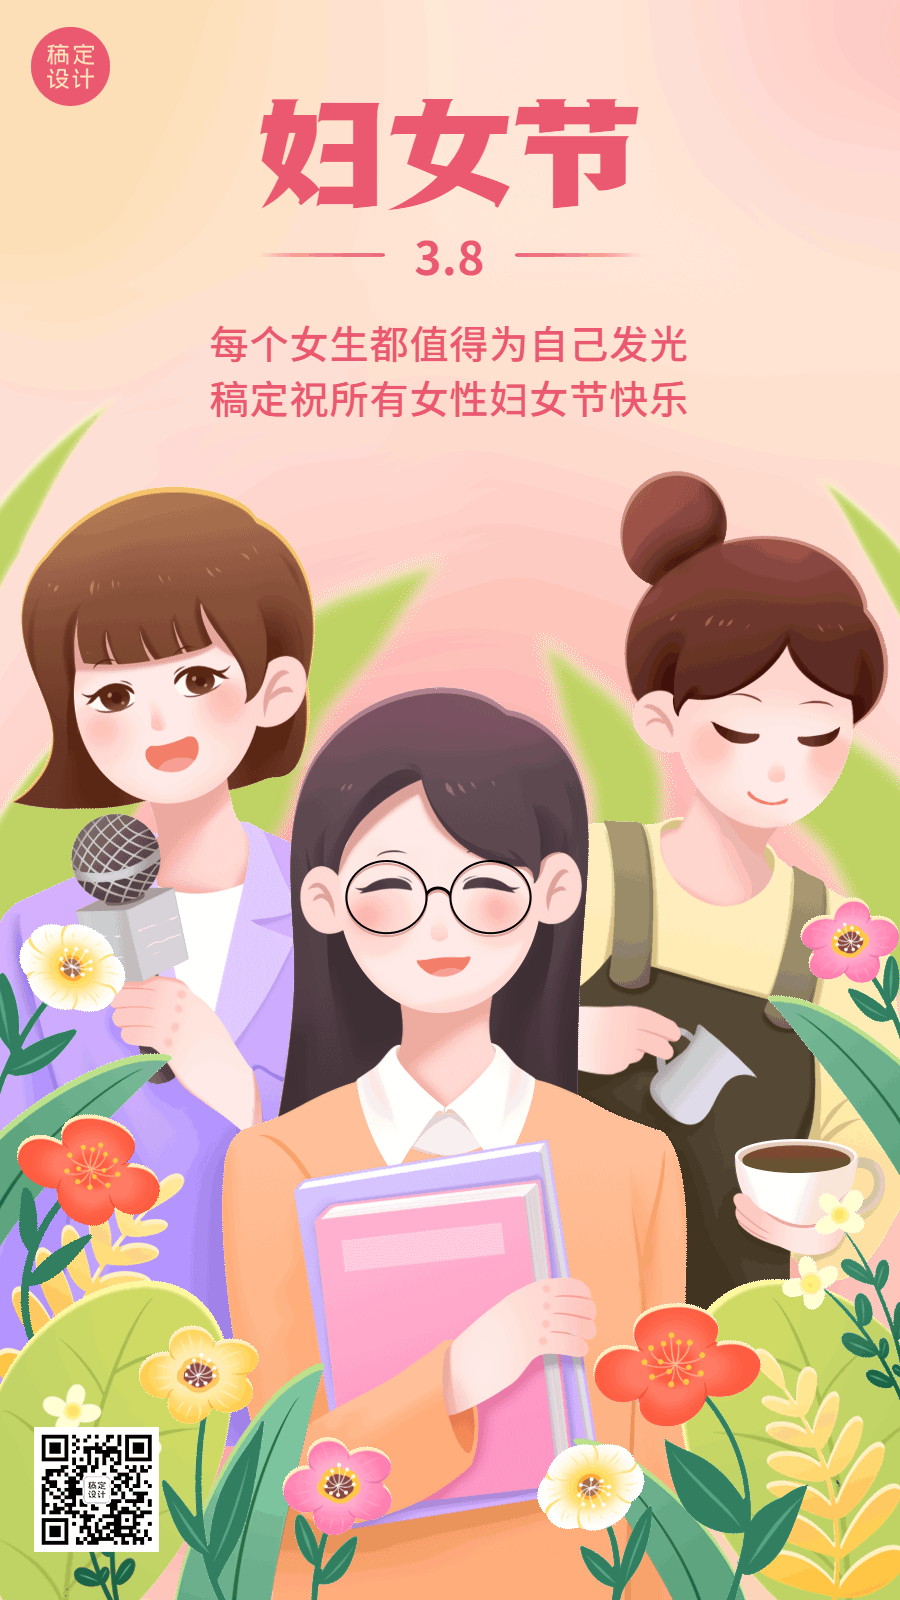 三八妇女节通用节日祝福插画动态海报